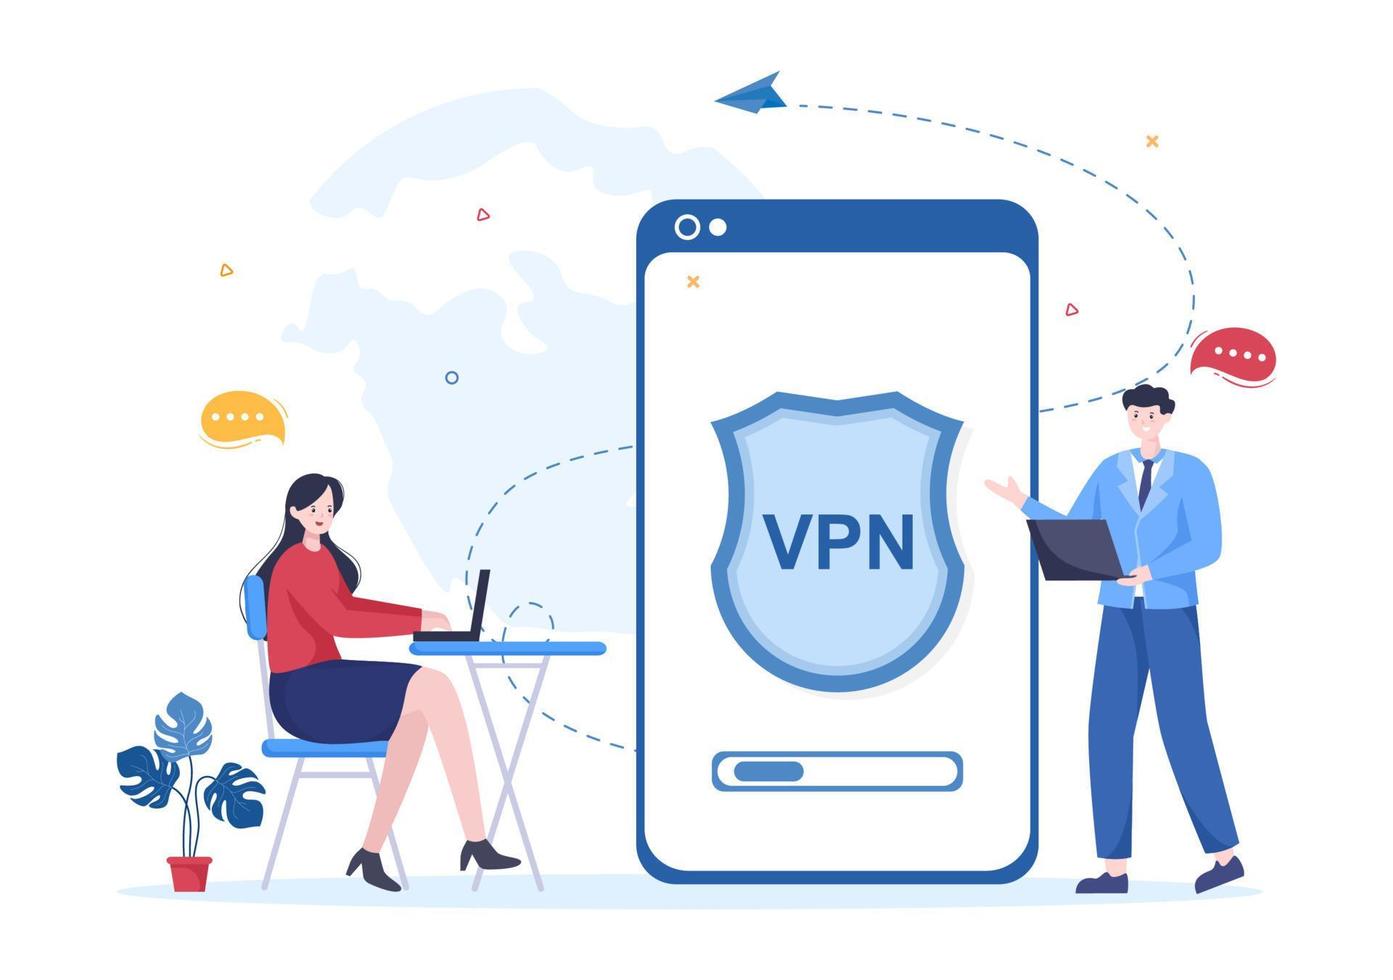 vpn o servicio de red privada virtual ilustración vectorial de dibujos animados para proteger, seguridad cibernética y asegurar sus datos personales en teléfonos inteligentes o computadoras vector